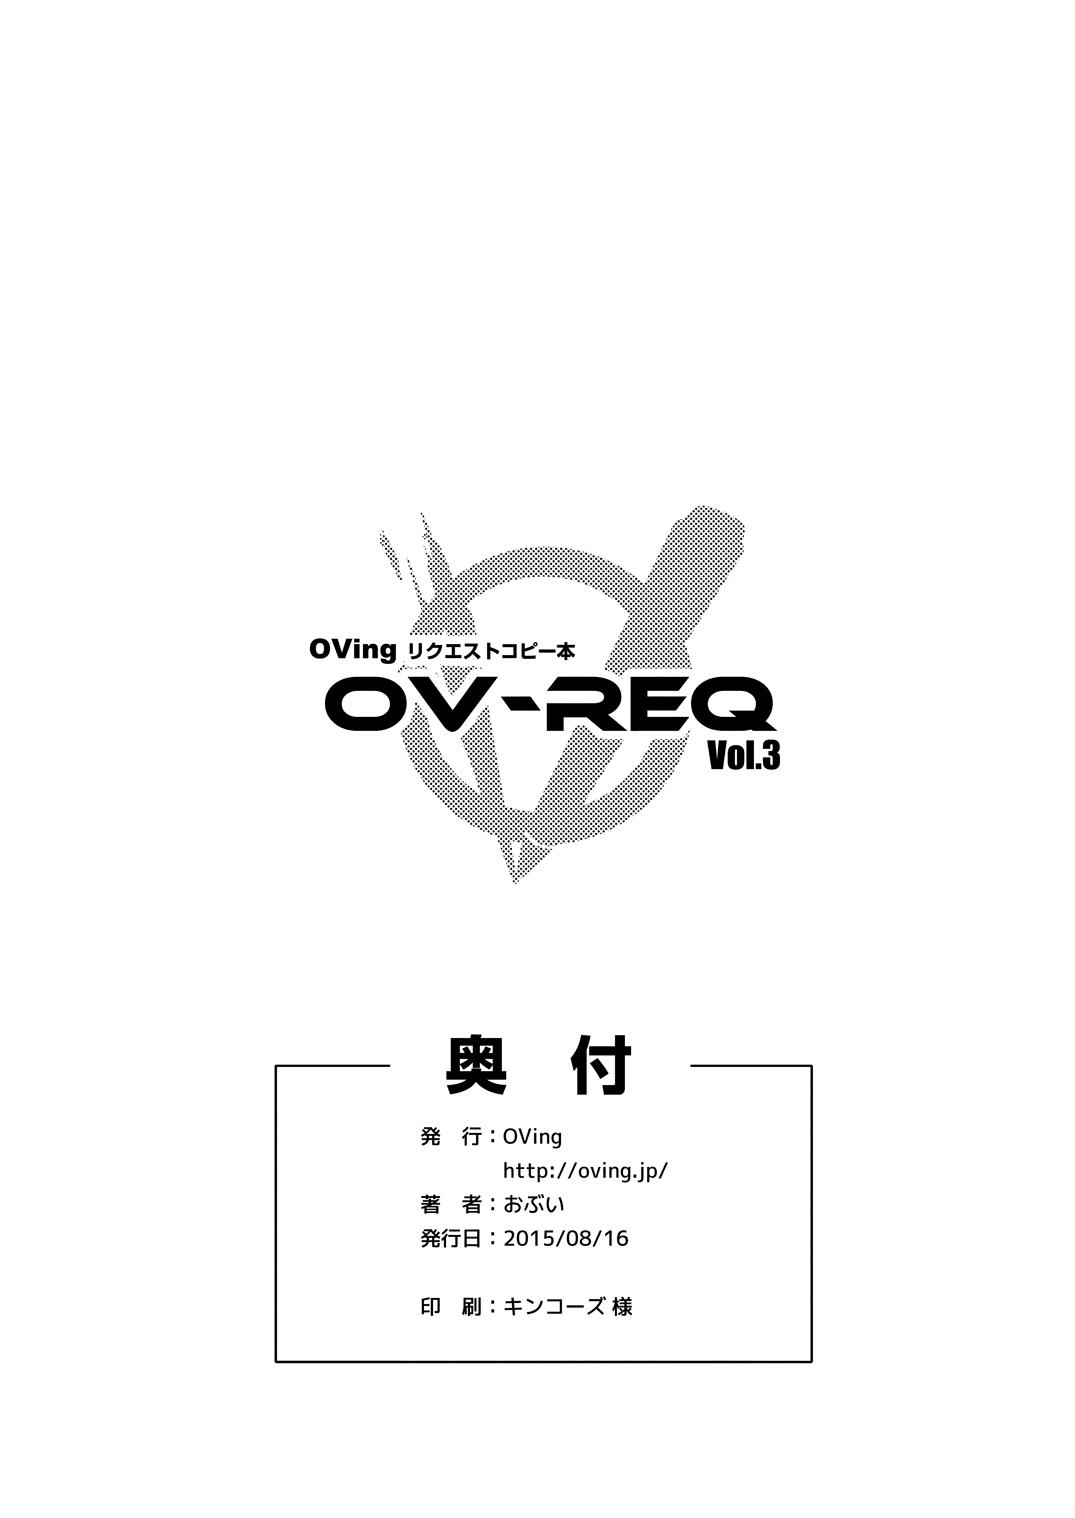 OV-REQ Vol. 3 8